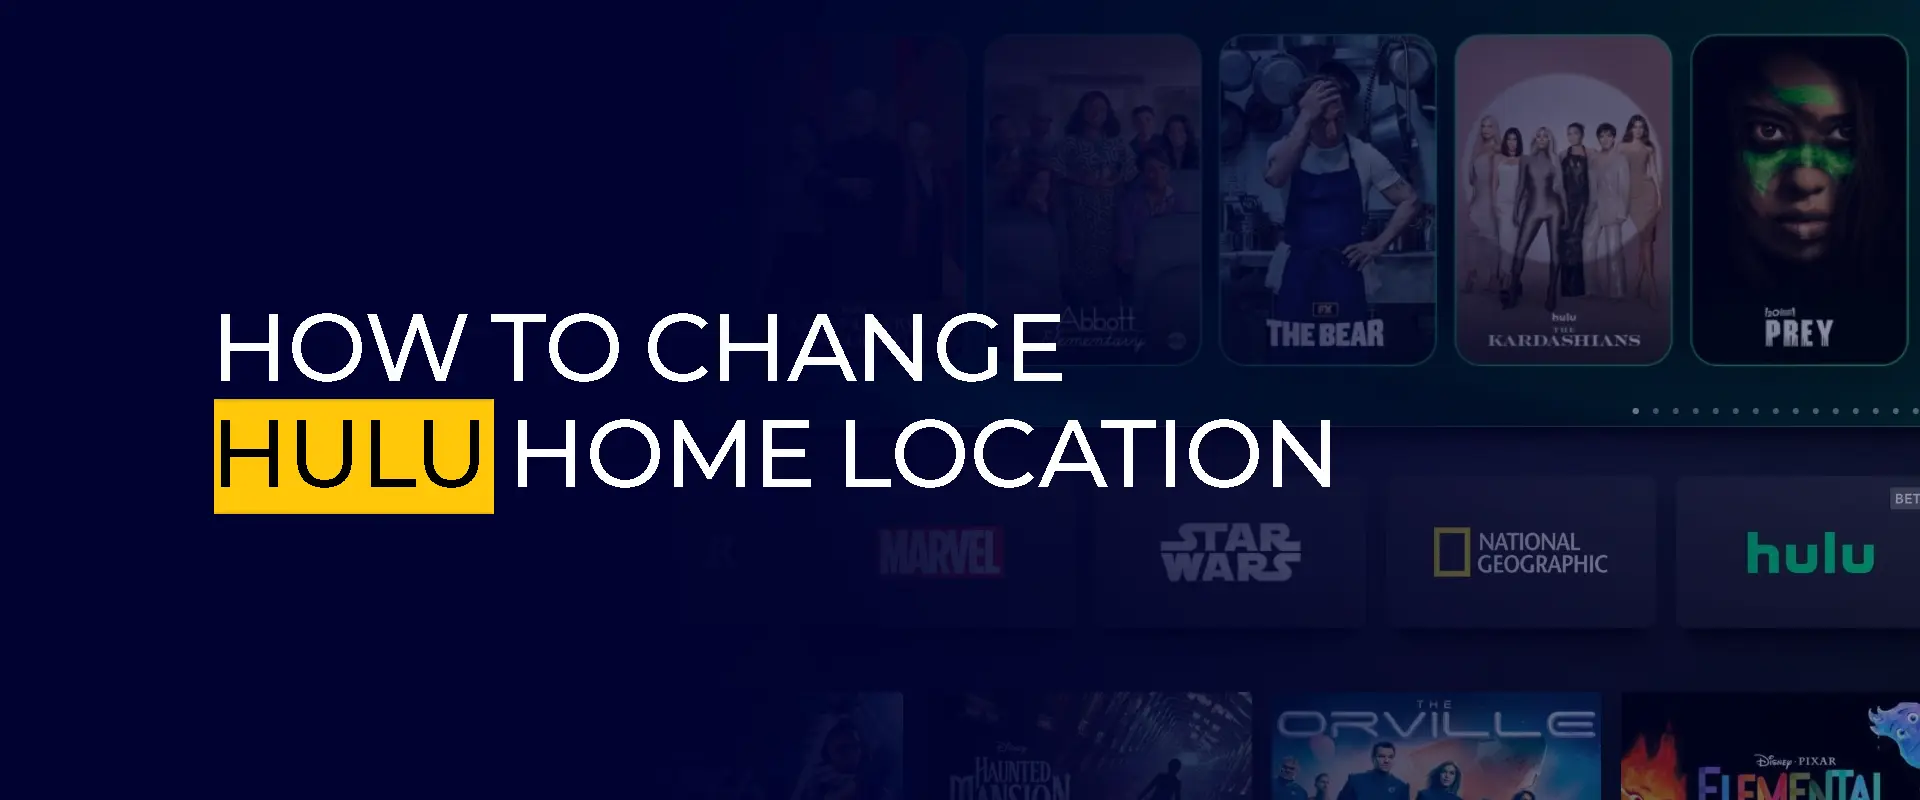 Hur man ändrar Hulu hemplats